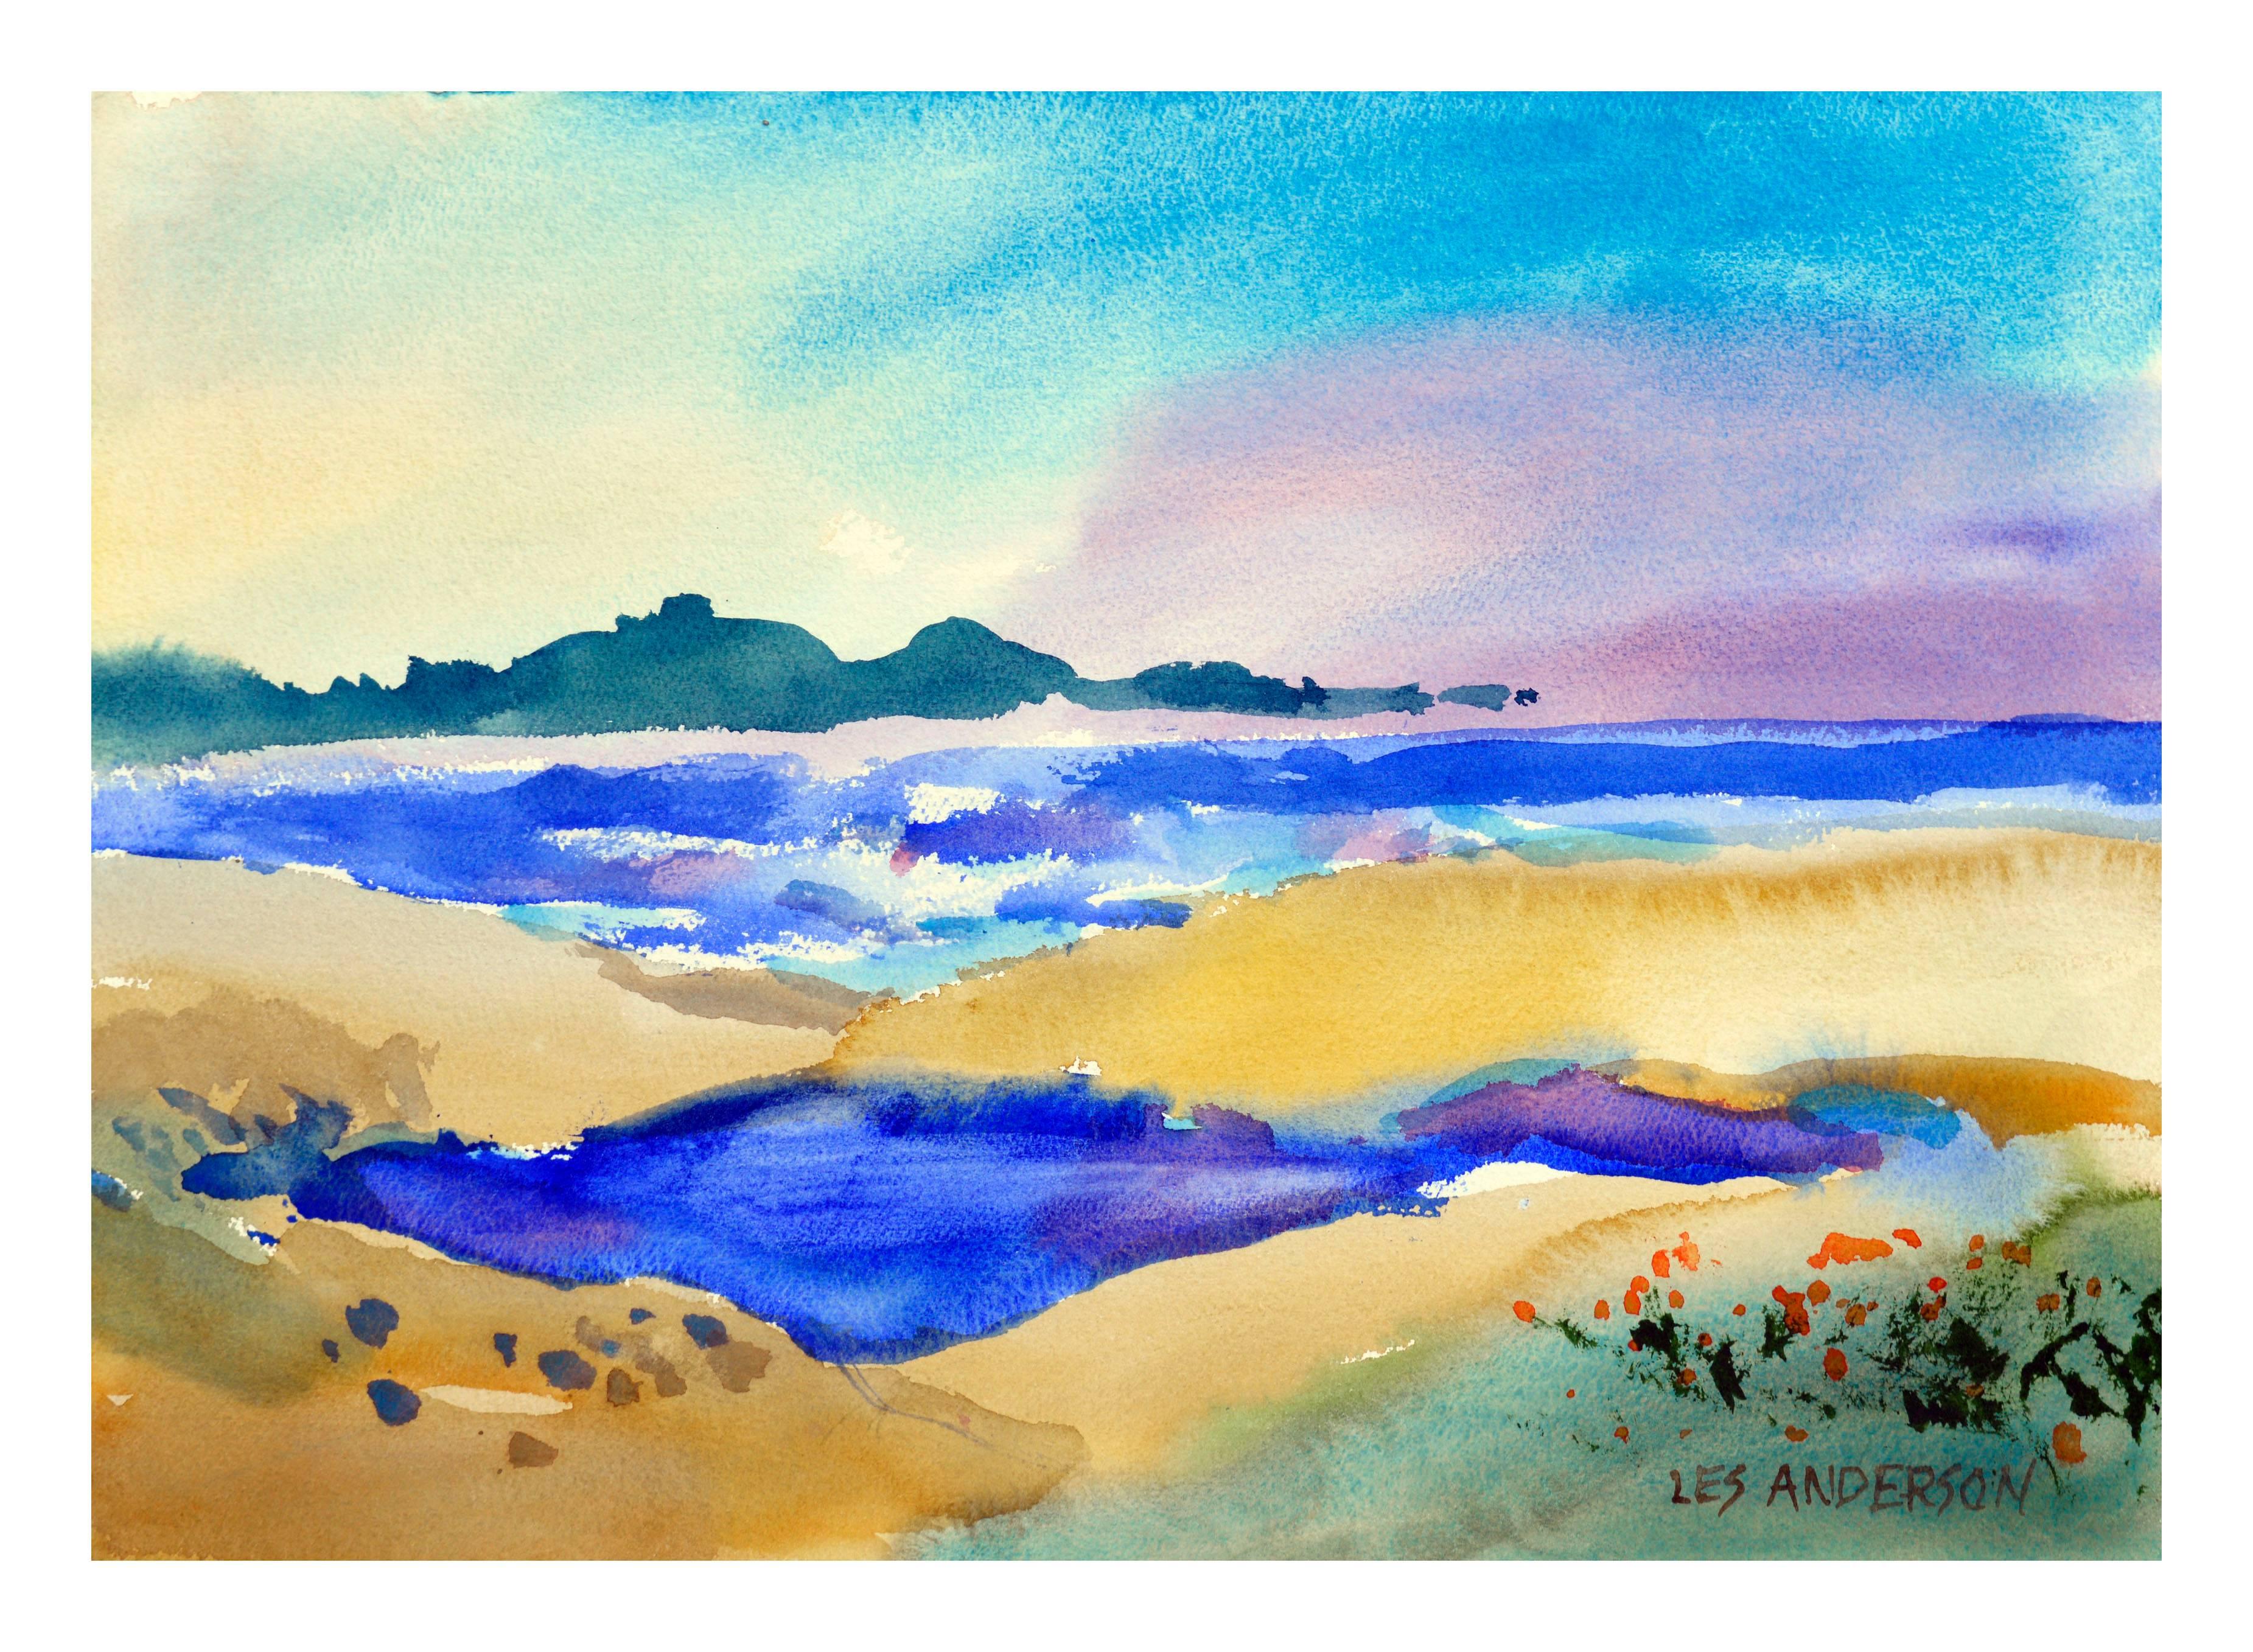 Les Anderson Landscape Painting - Sand Dunes Seascape 